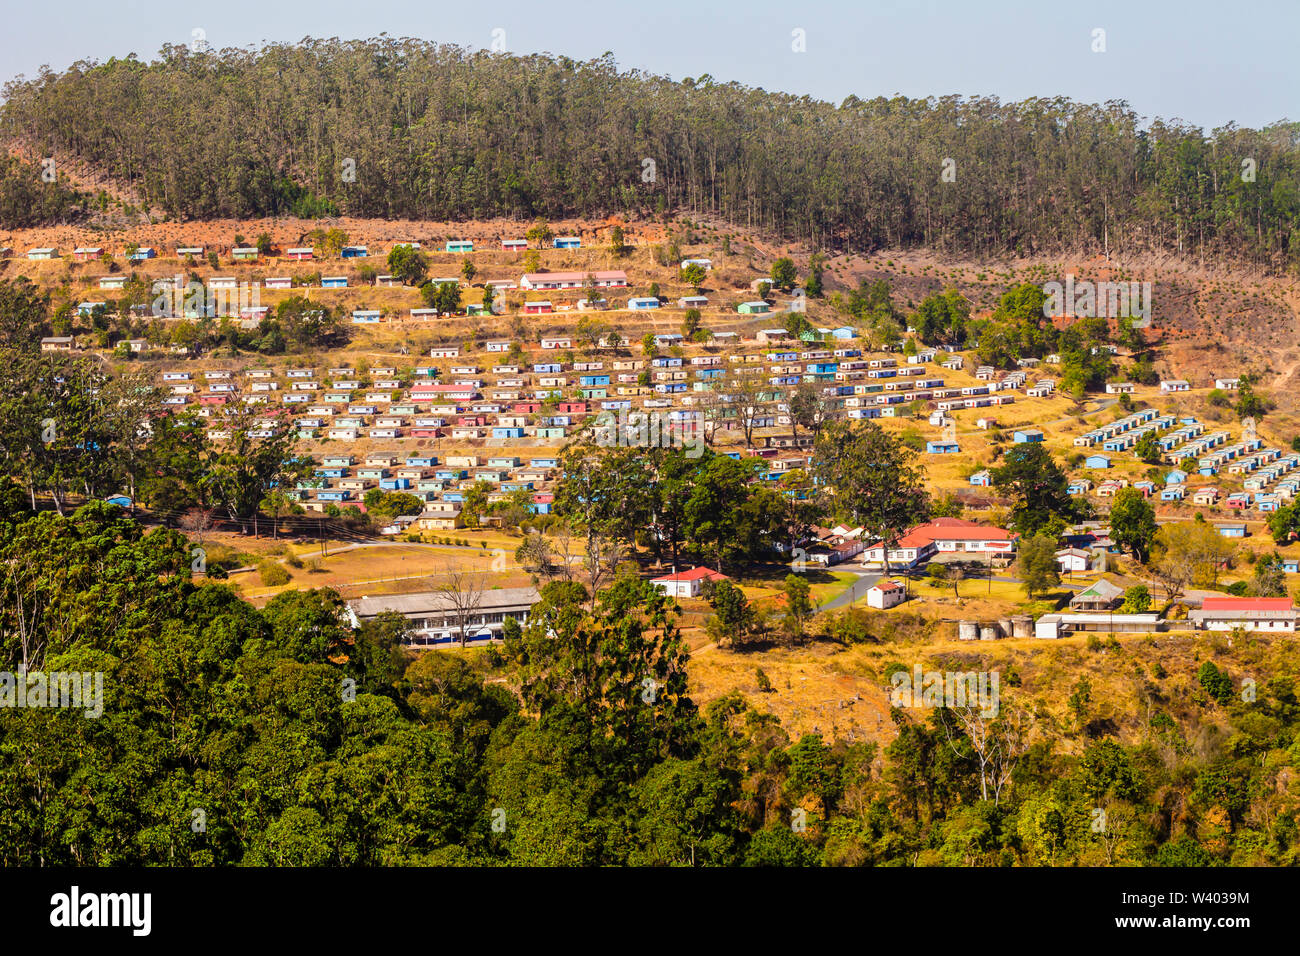 Vista panorámica del pueblo típico con coloridas casas dispuestas en forma geométrica, Swazilandia, Sudáfrica Foto de stock